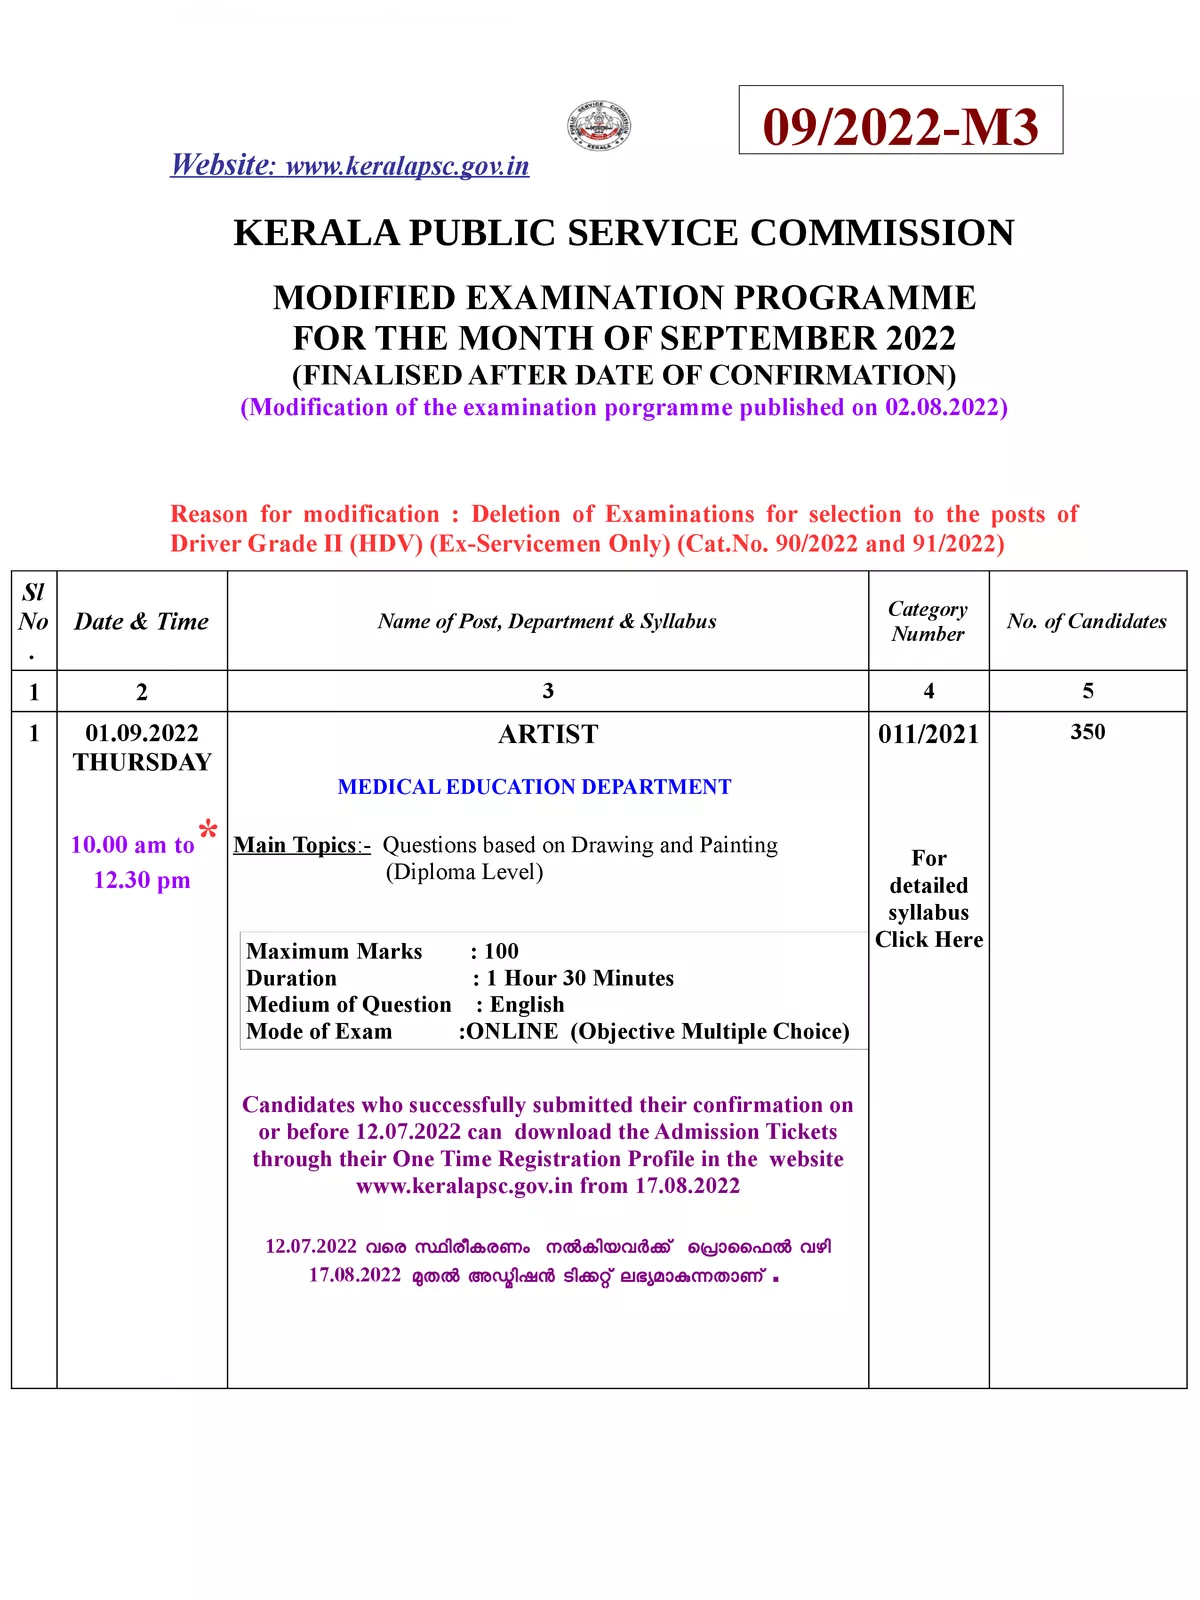 Kerala PSC Exam Calendar 2022